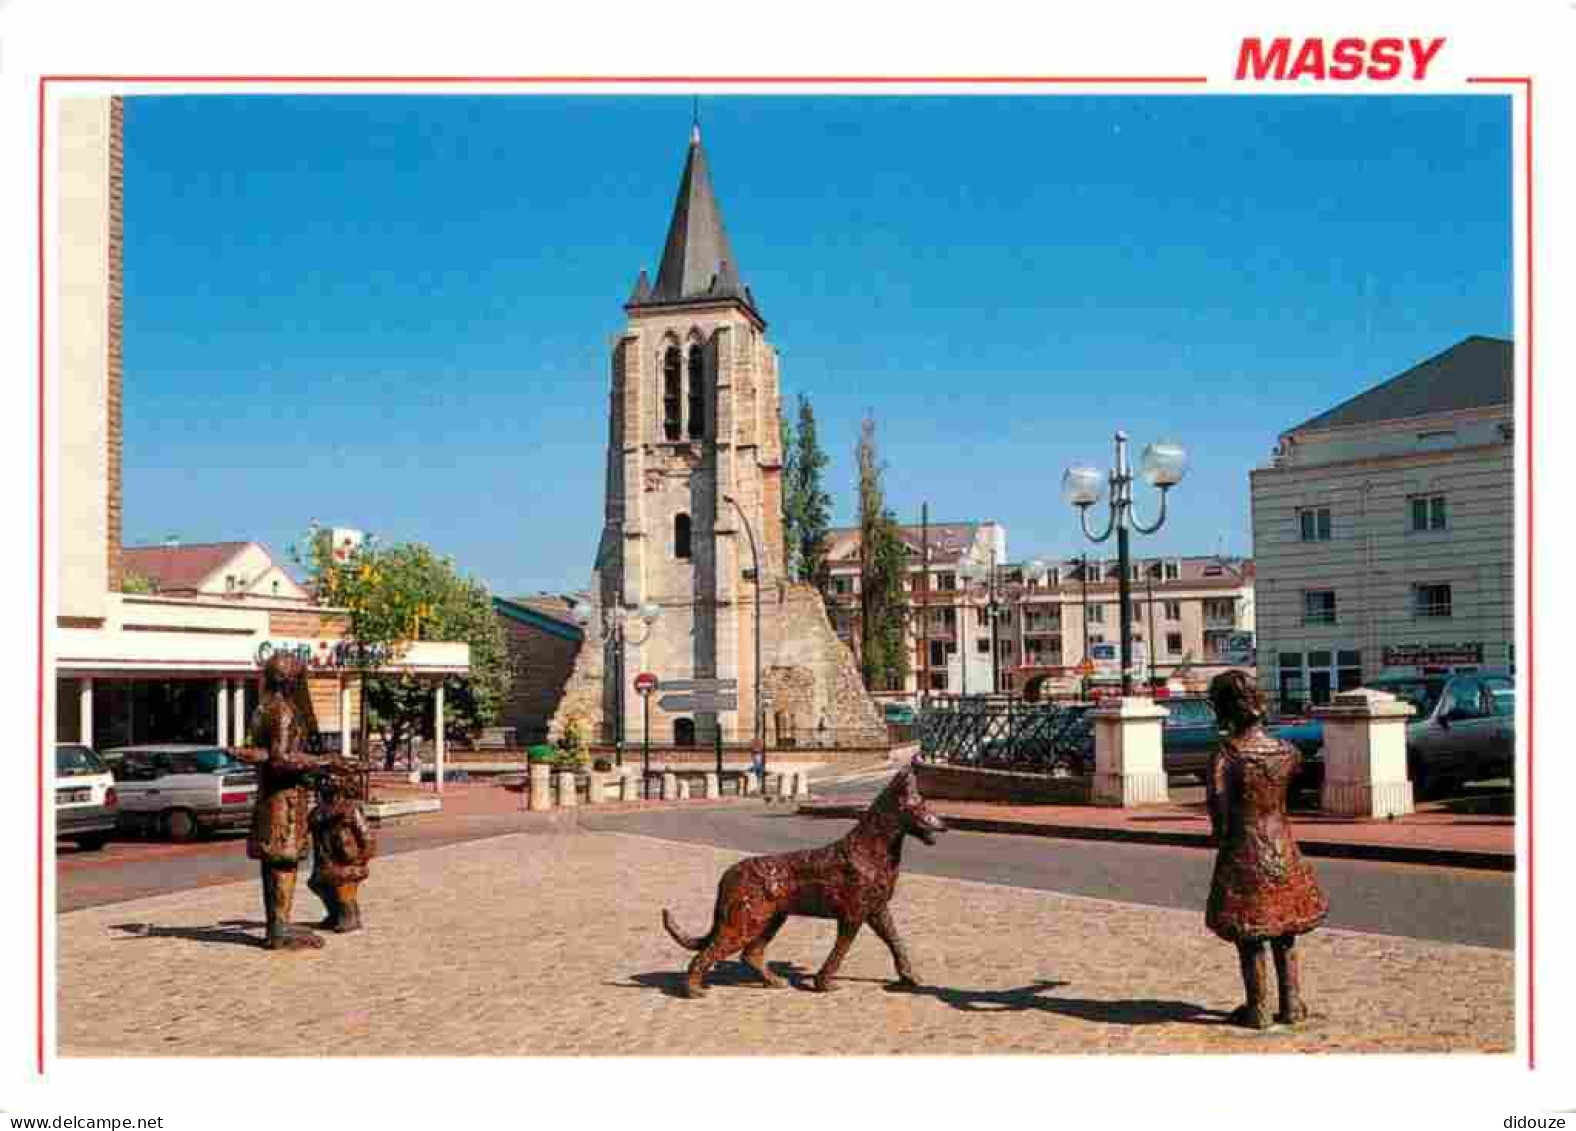 91 - Massy - Ancien Clocher Du XIIIe Siècle - Banque Crédit Mutuel - Eglise - Statues - CPM - Carte Neuve - Voir Scans R - Massy